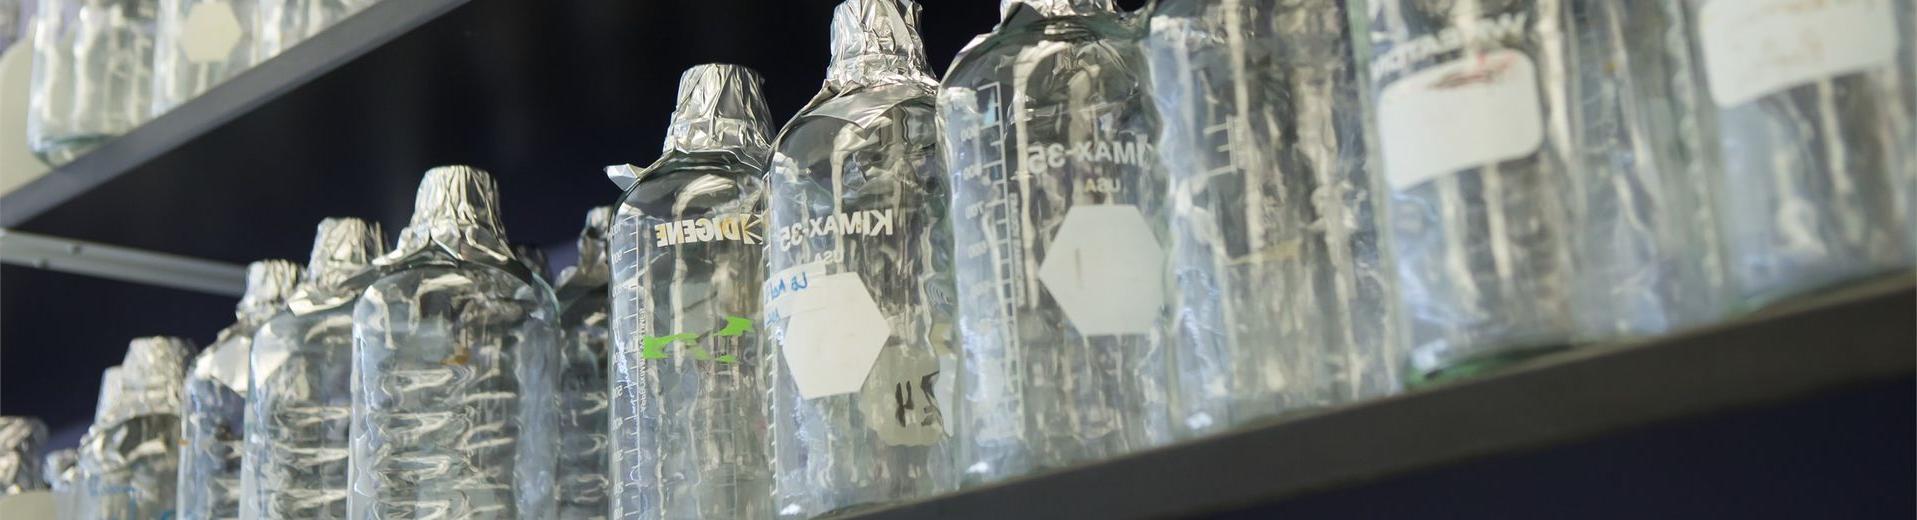 在坦普尔大学神经科学实验室的架子上，一排贴有标签的试管和玻璃瓶.